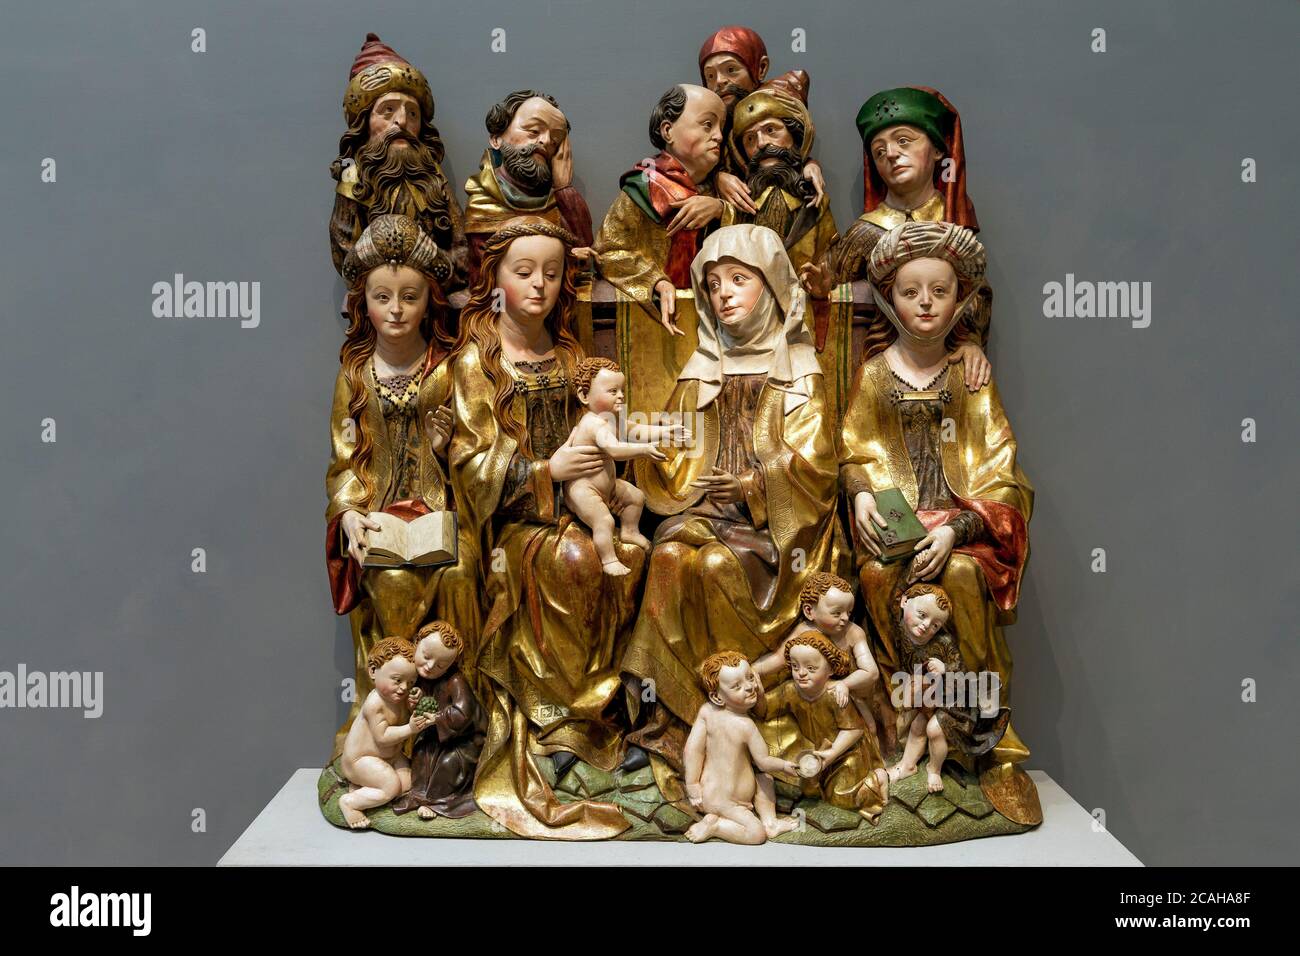 La Sainte parenté, l'allemand, 15e siècle, sculpture en bois,National Gallery of Art, Washington DC, USA, Amérique du Nord Banque D'Images